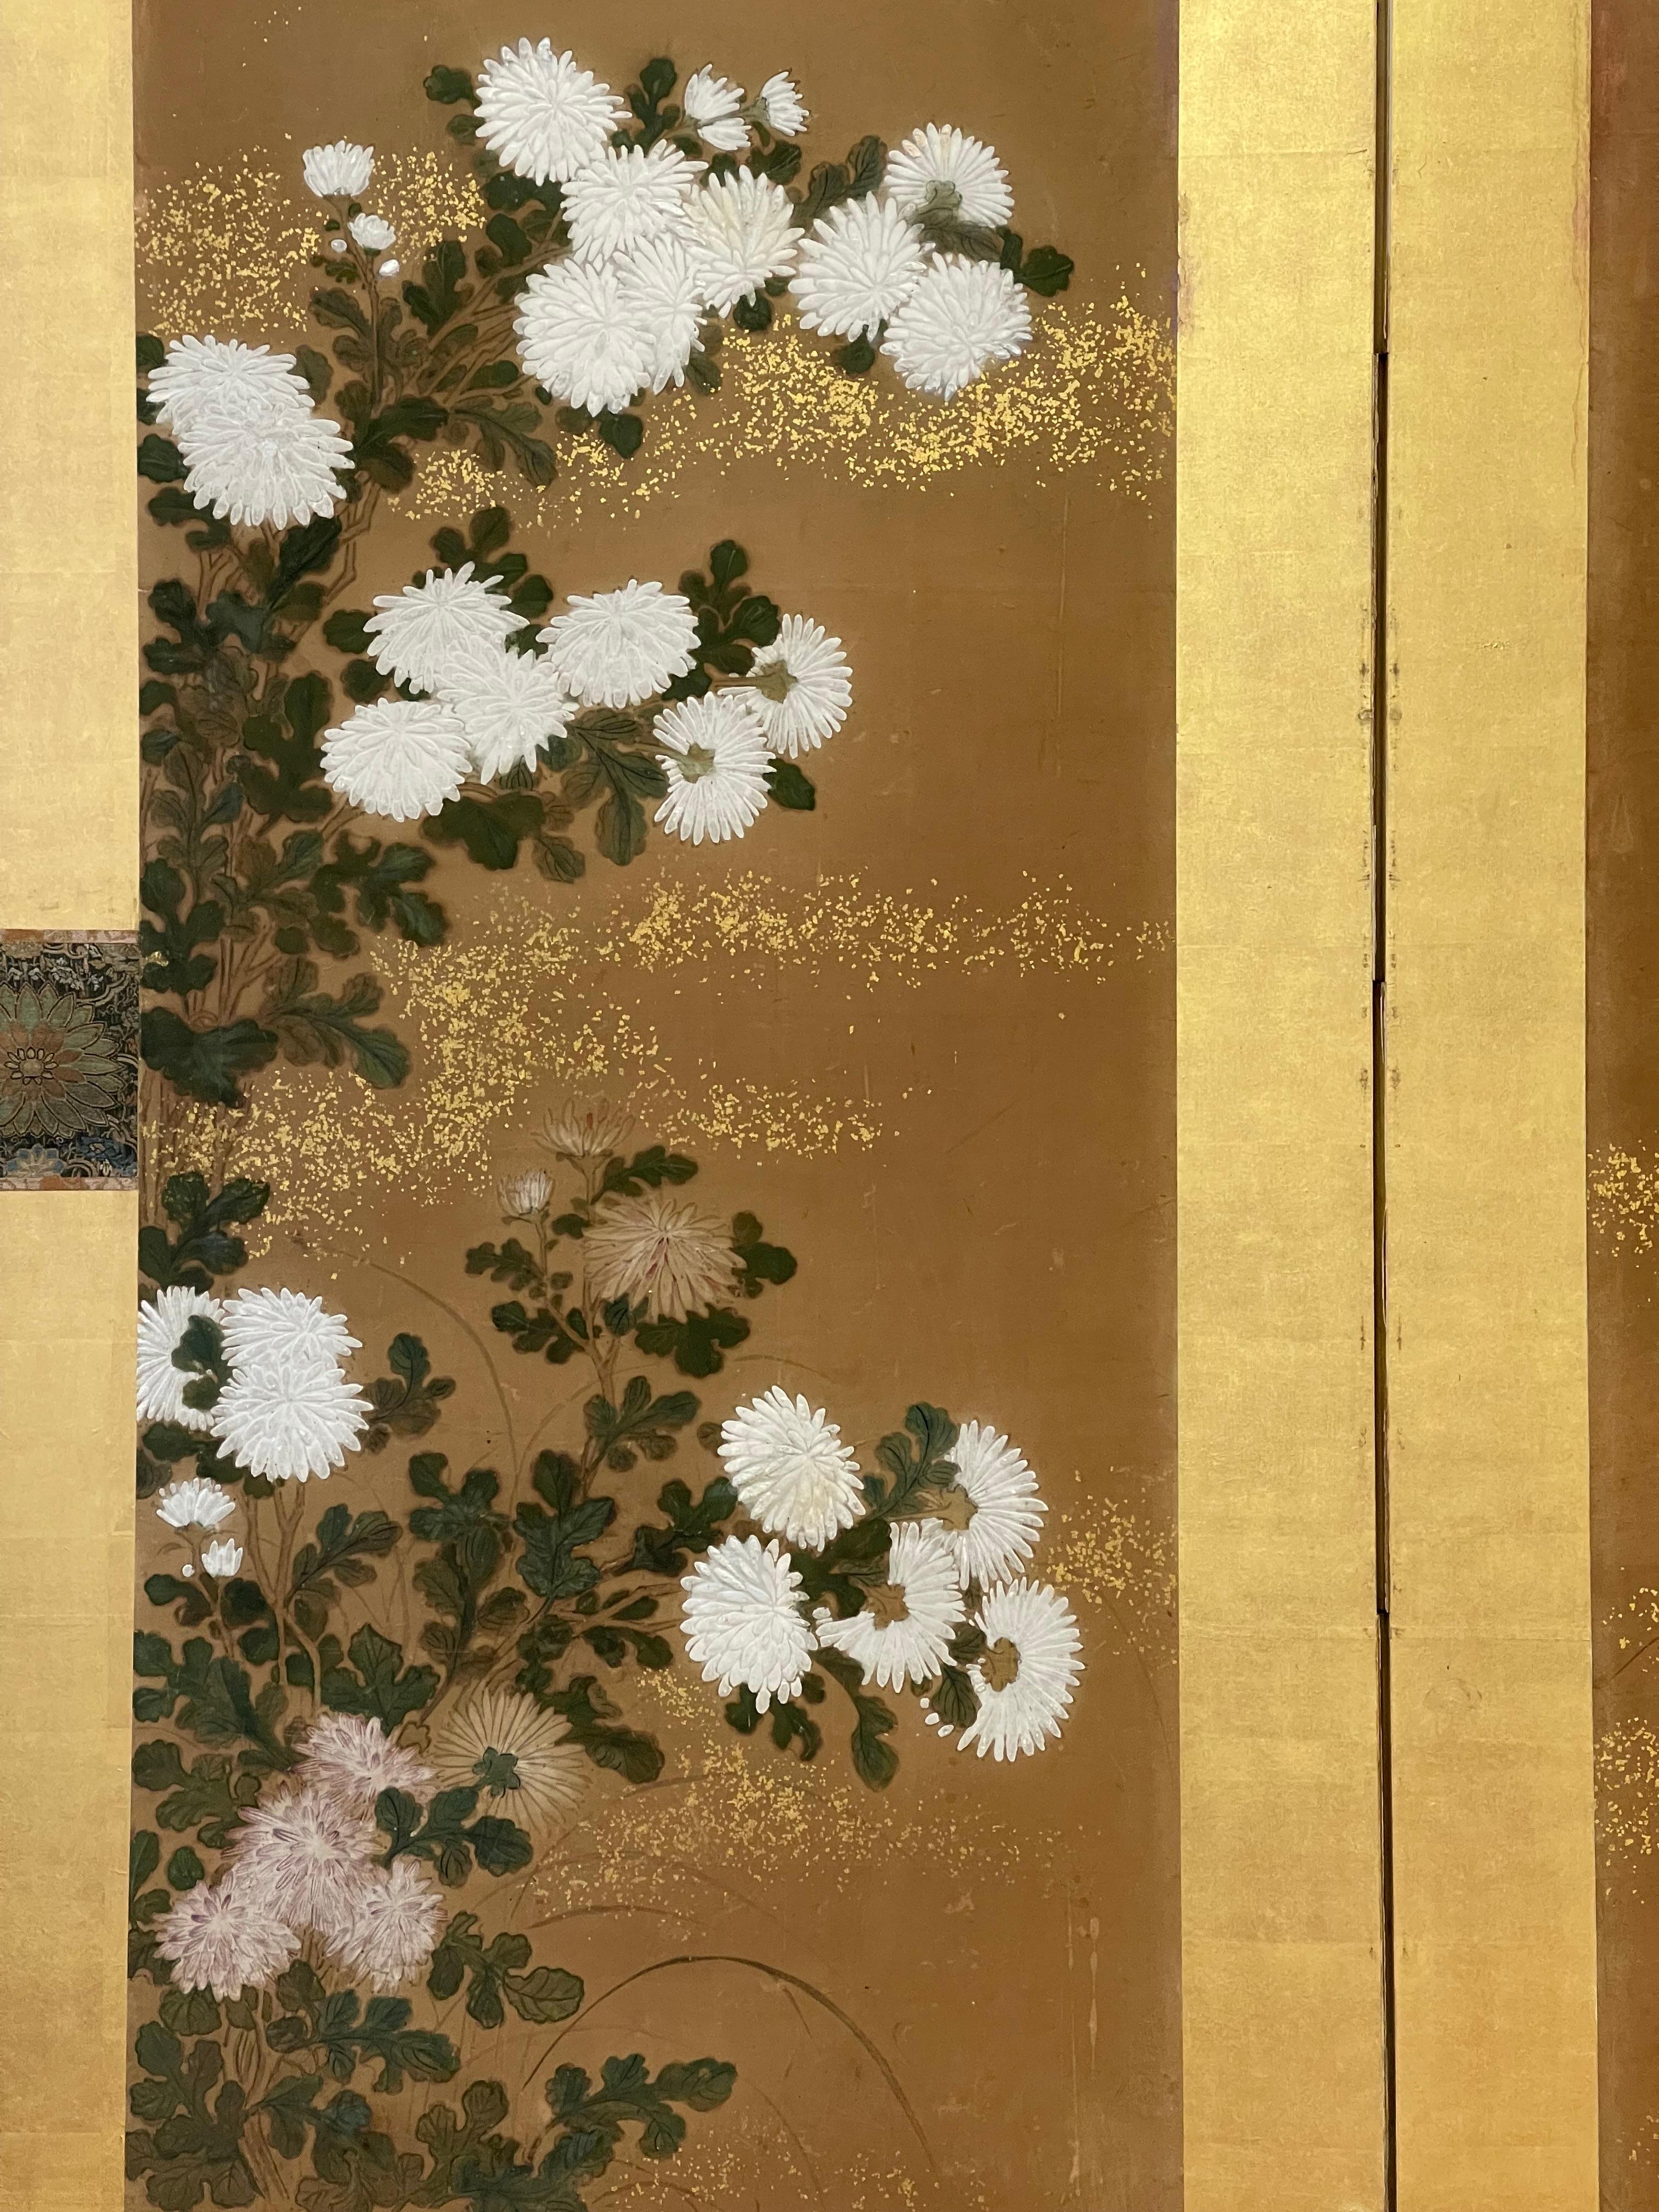 Magnifique paravent japonais à deux panneaux représentant des chrysanthèmes, 17e siècle. Laque de coquille d'huître (Gofun), peinture minérale et poussière d'or sur papier de mûrier. Somptueux brocards de soie avec cadre en feuille d'or. Un